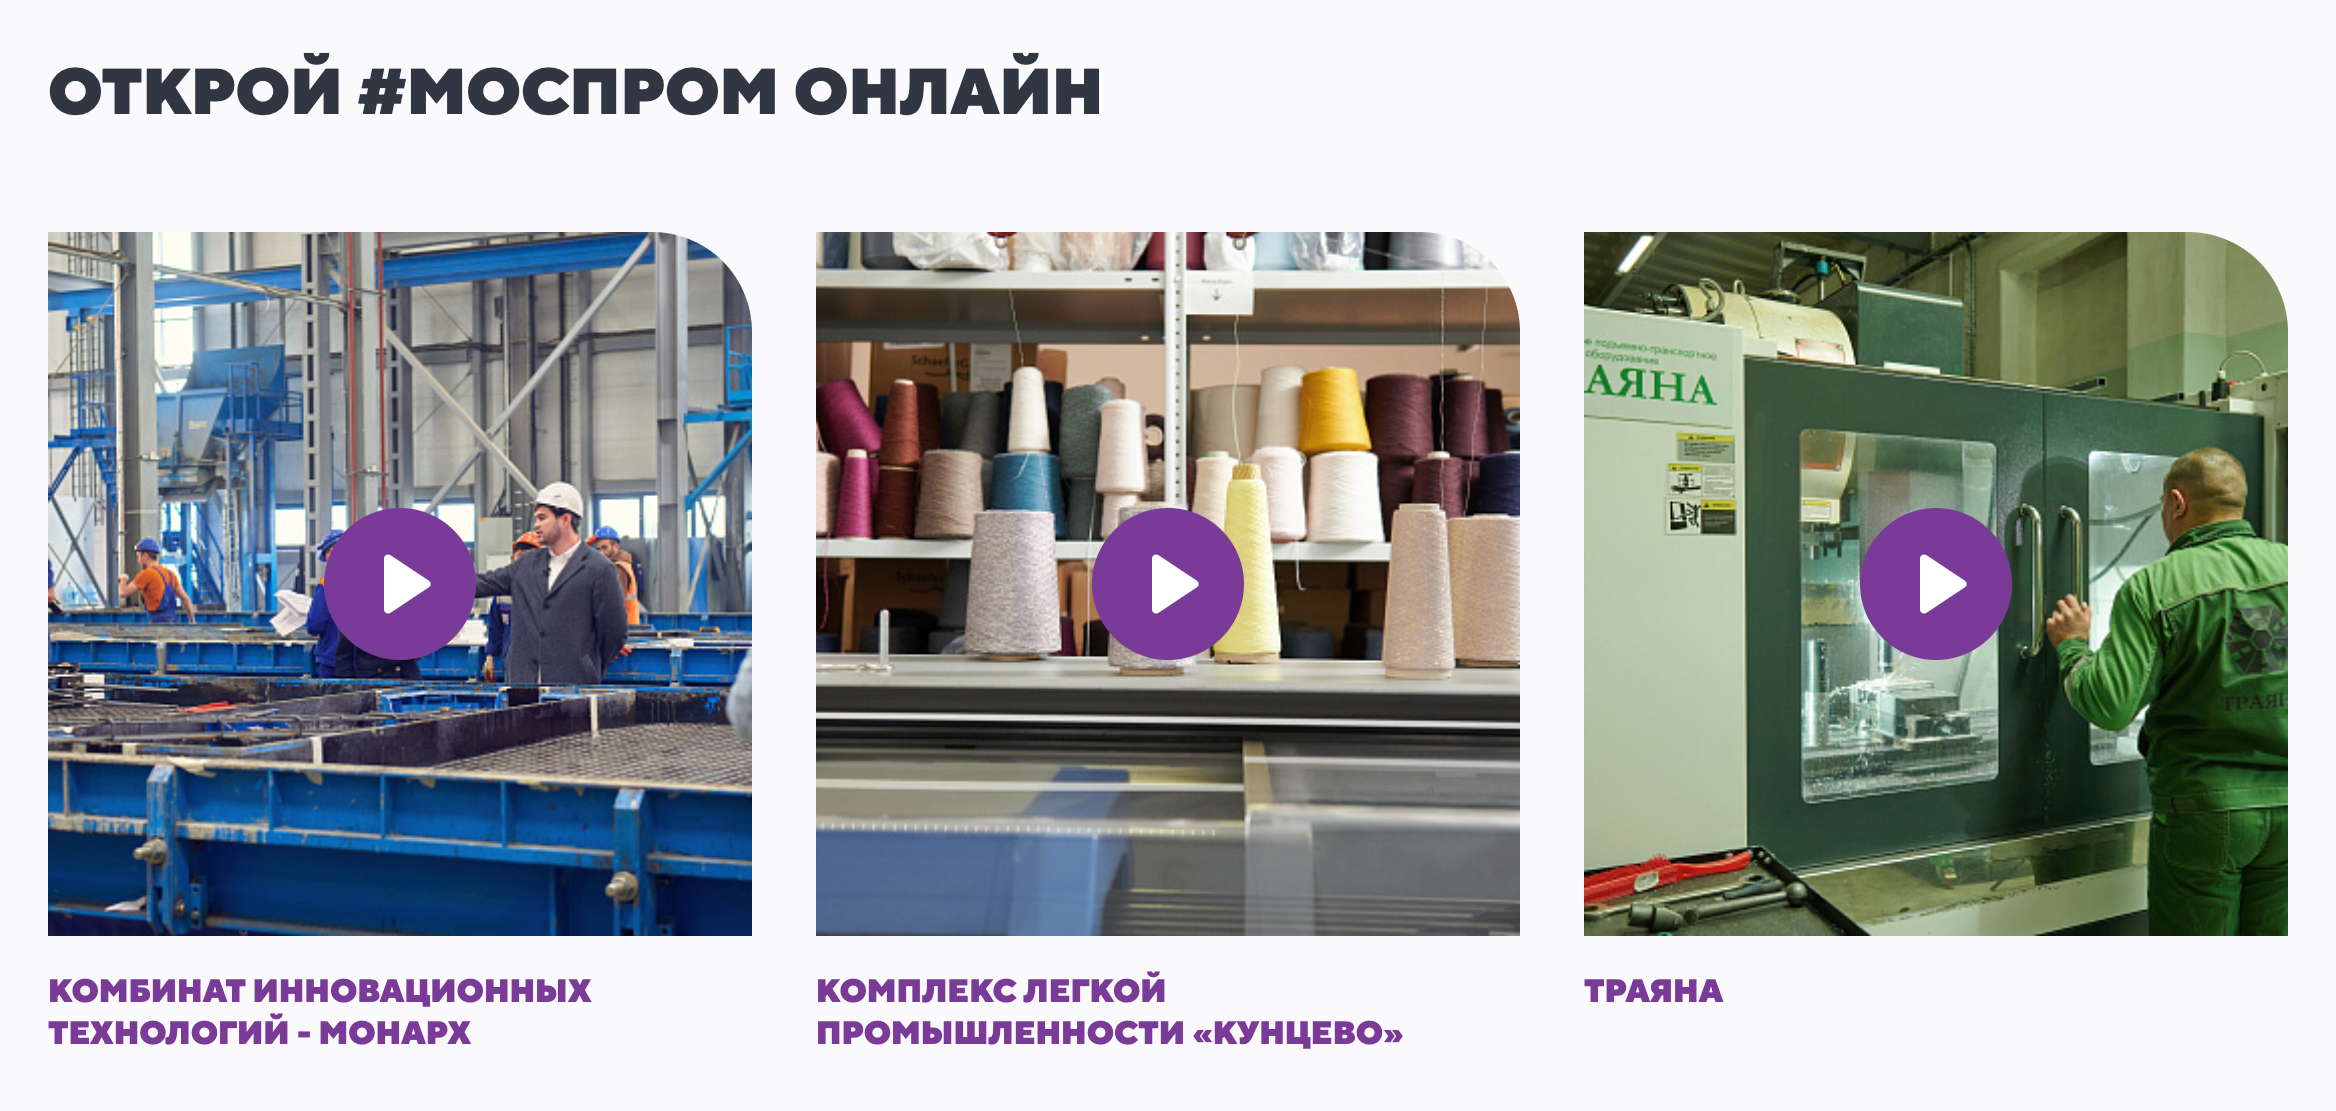 На сайте проекта можно посмотреть короткие видео об экскурсиях на разных предприятиях. Источник: otkroimosprom.ru